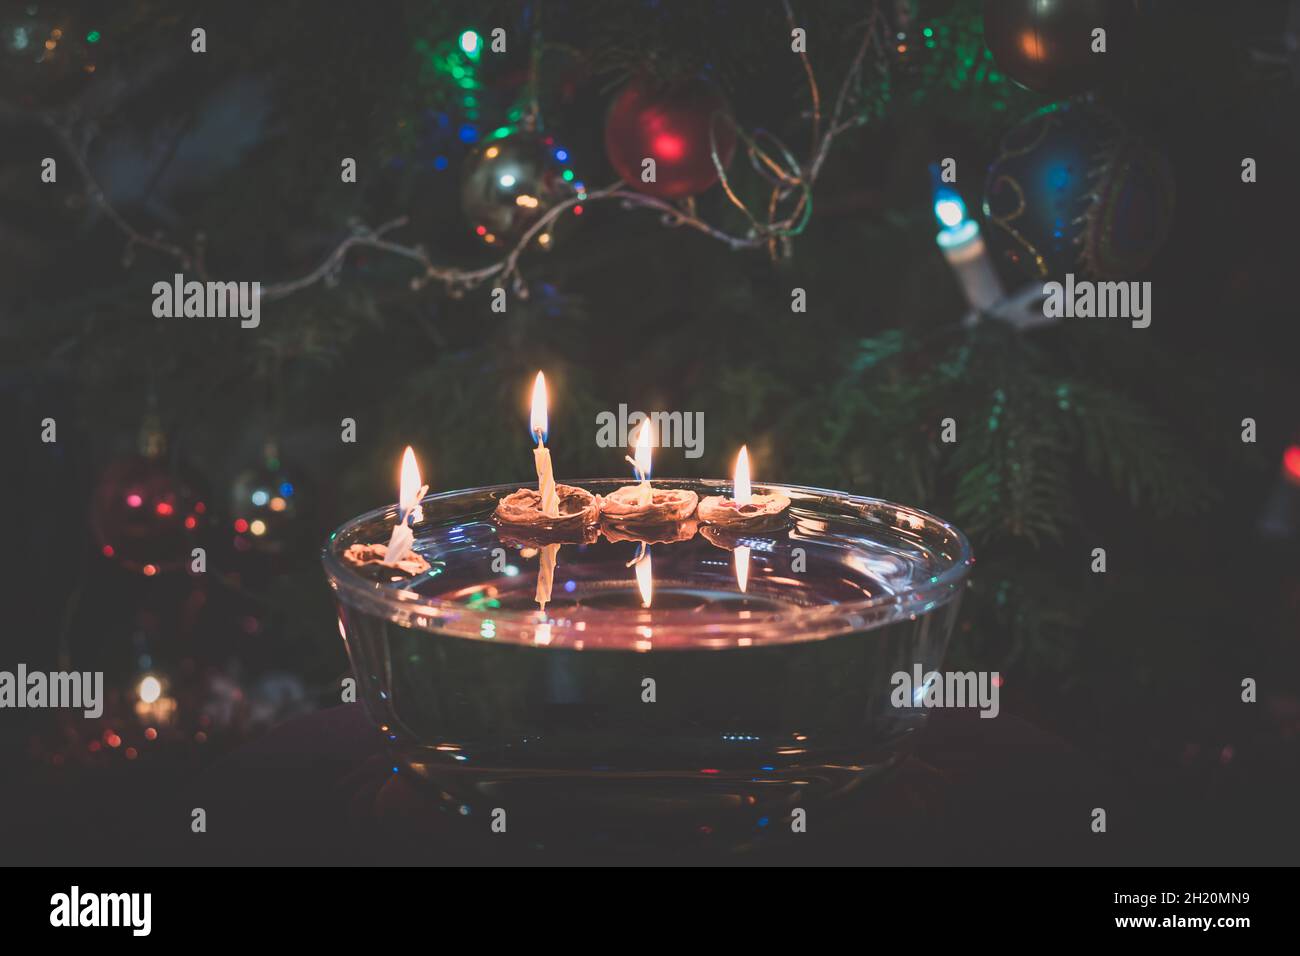 Weihnachtssymbole, auf dem Wasser schwebende Kerzen in Nussschalen, Traditionen und Kostüme, Kopierraum Stockfoto